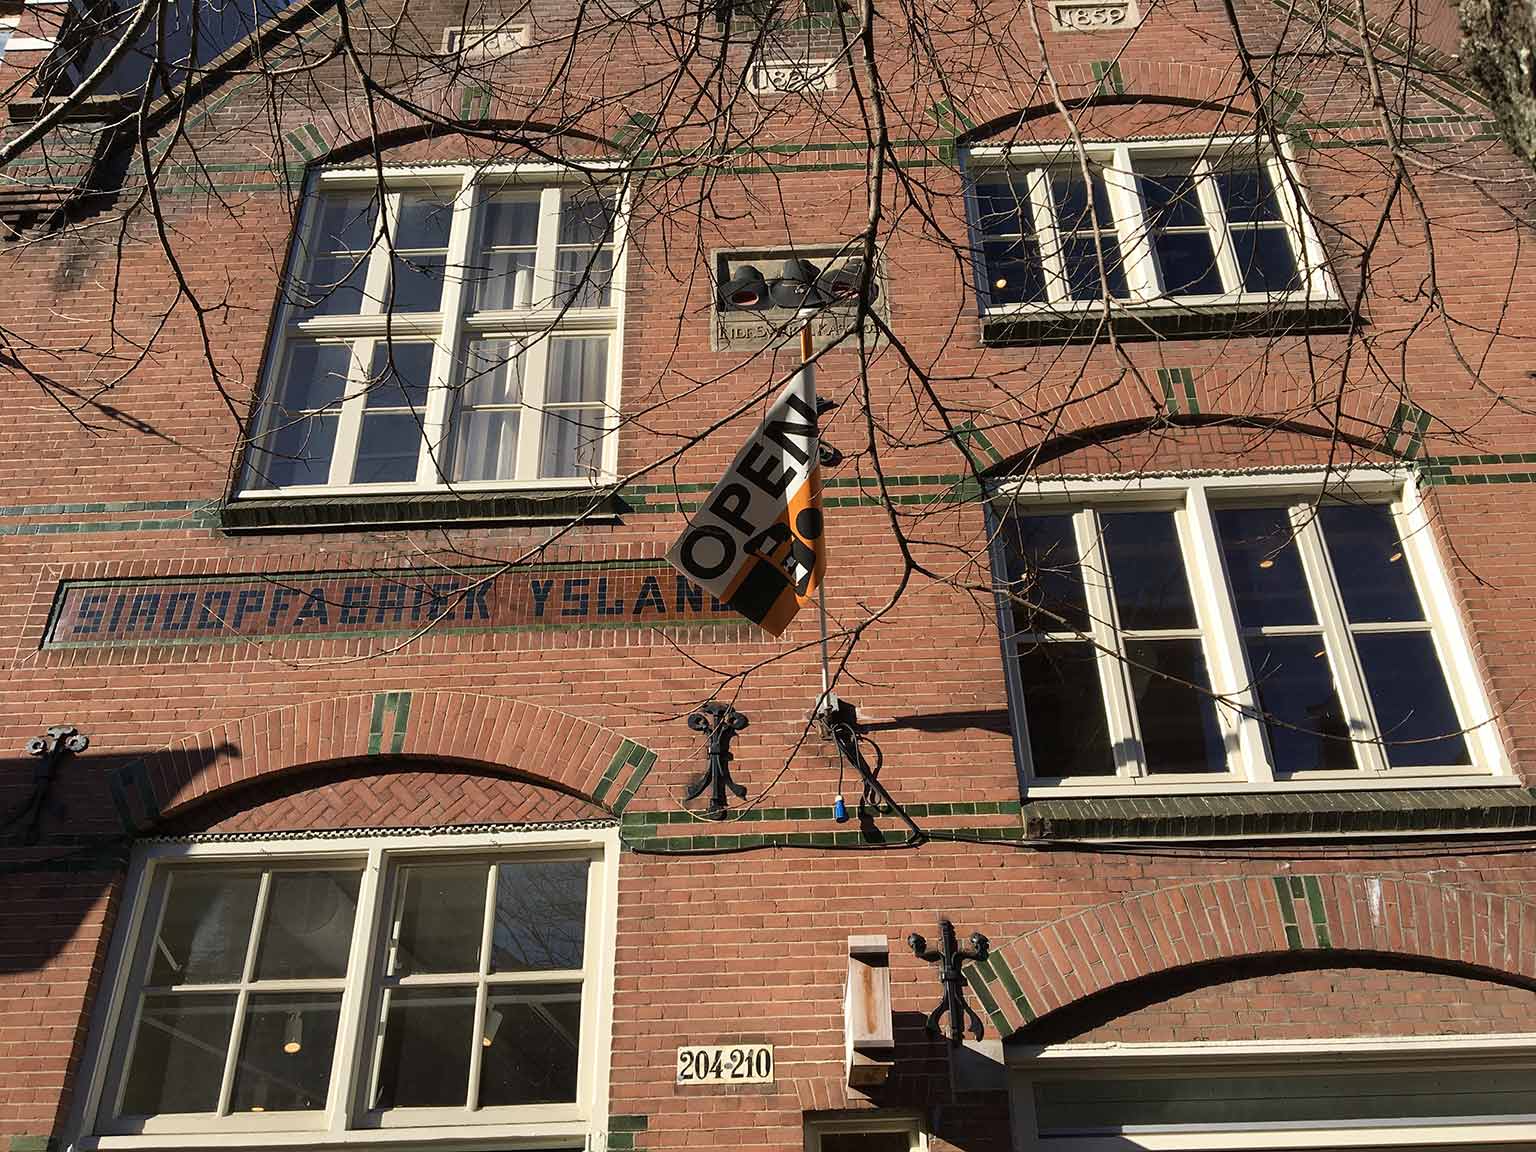 Voorgevel van Siroopfabriek Ysland, Rozengracht, Amsterdam, met jaartallen en gevelsteen